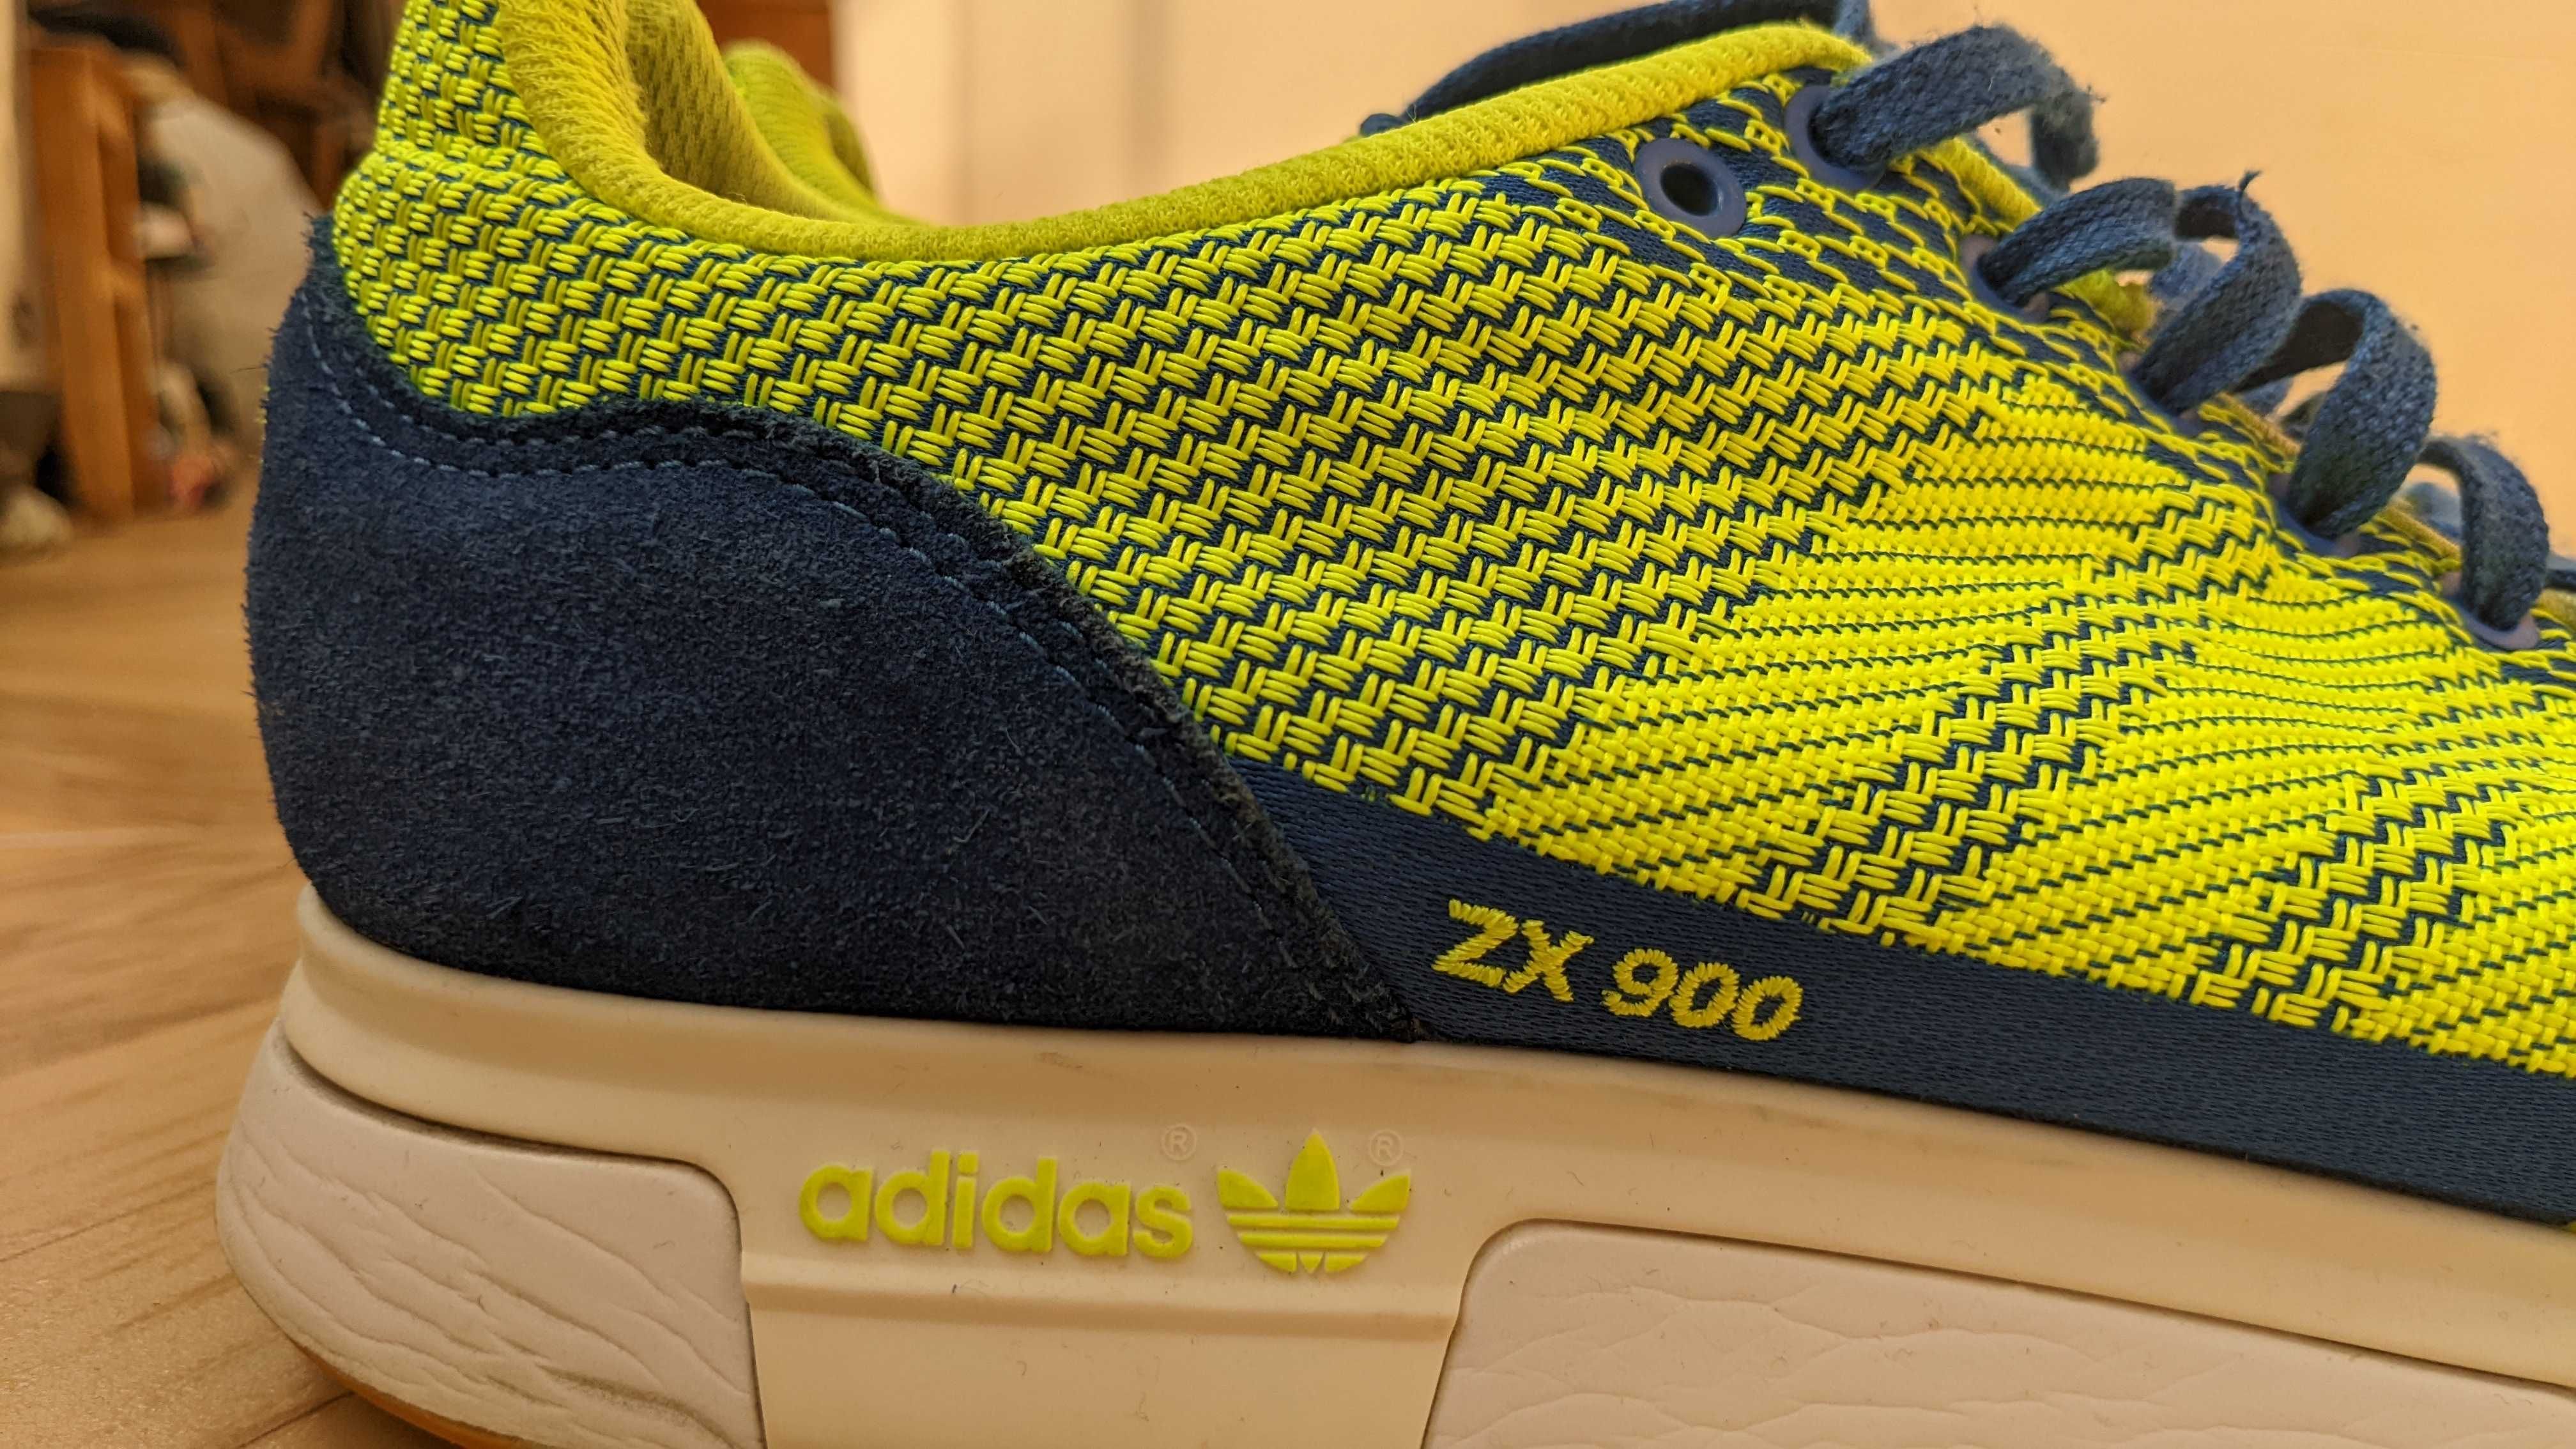 Adidas ZX 900 Waves [44.5]